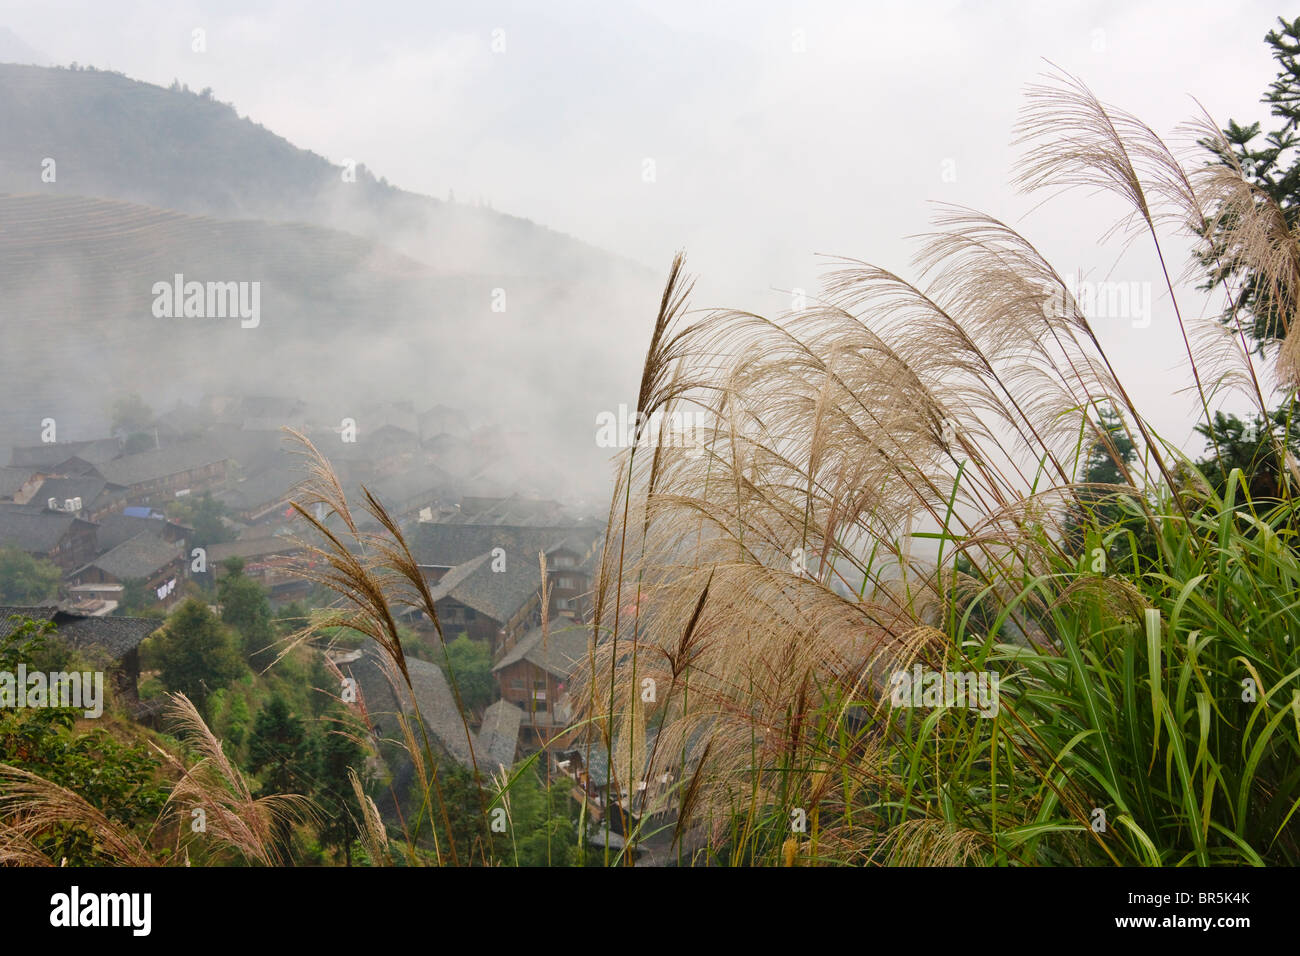 Maisons de village dans la montagne dans la brume, Longsheng, Guangxi, Chine Banque D'Images